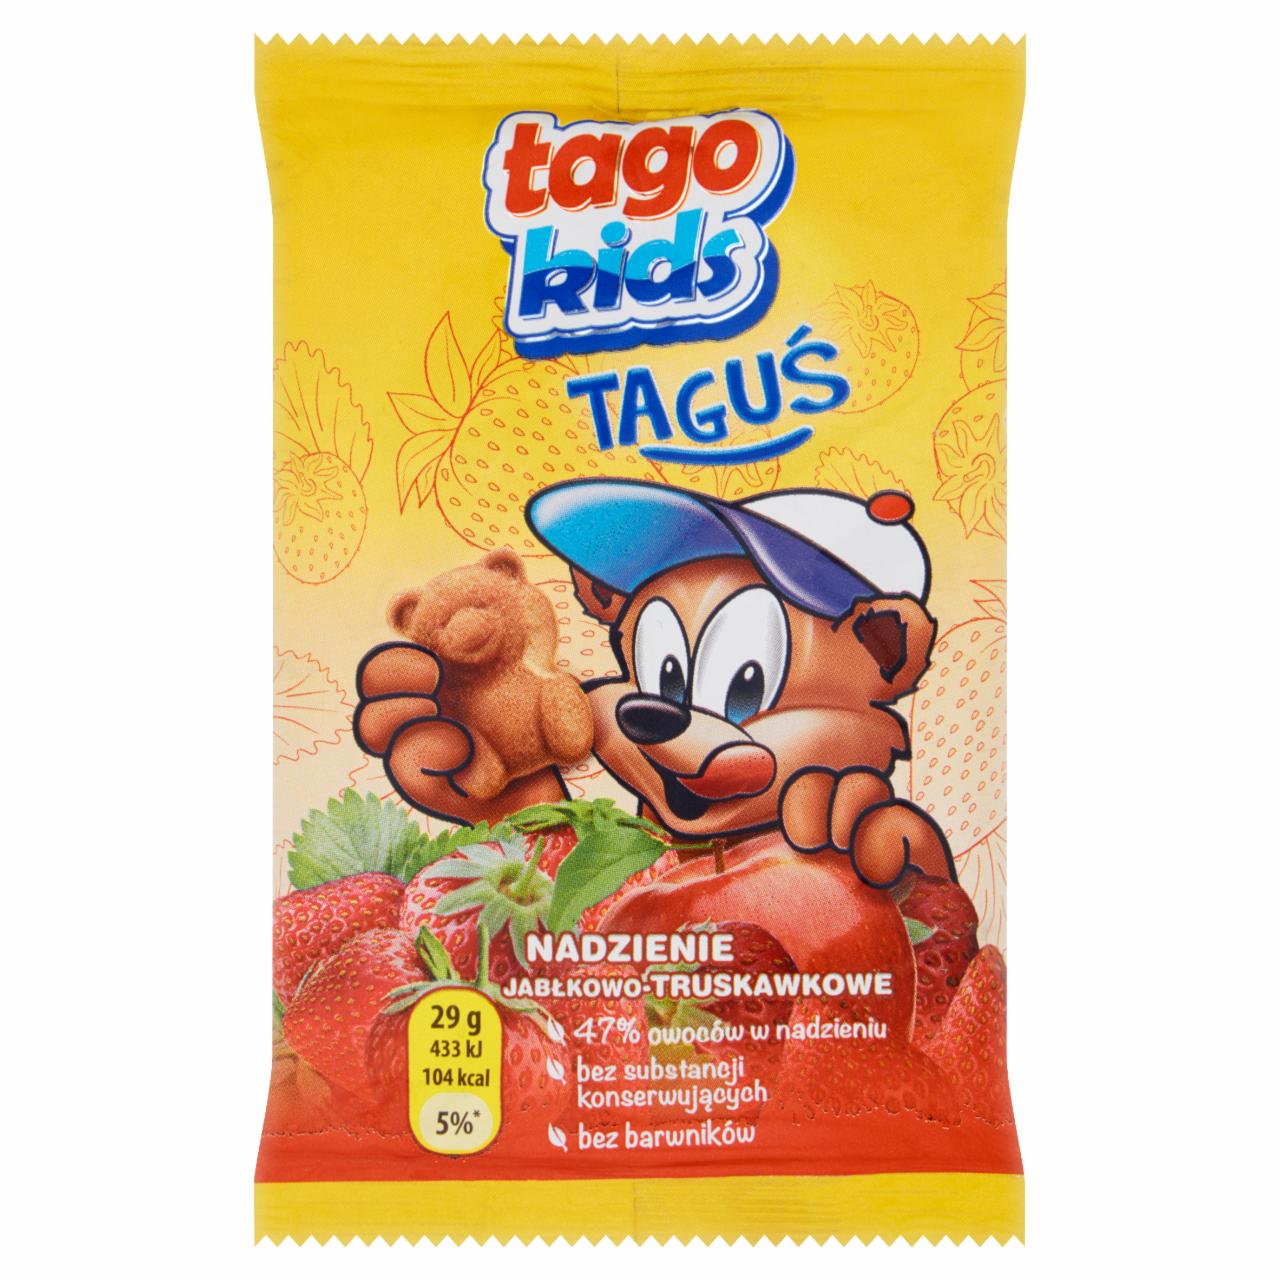 Zdjęcia - Tago Kids Taguś Ciastko biszkoptowe z nadzieniem jabłkowo-truskawkowym 29 g